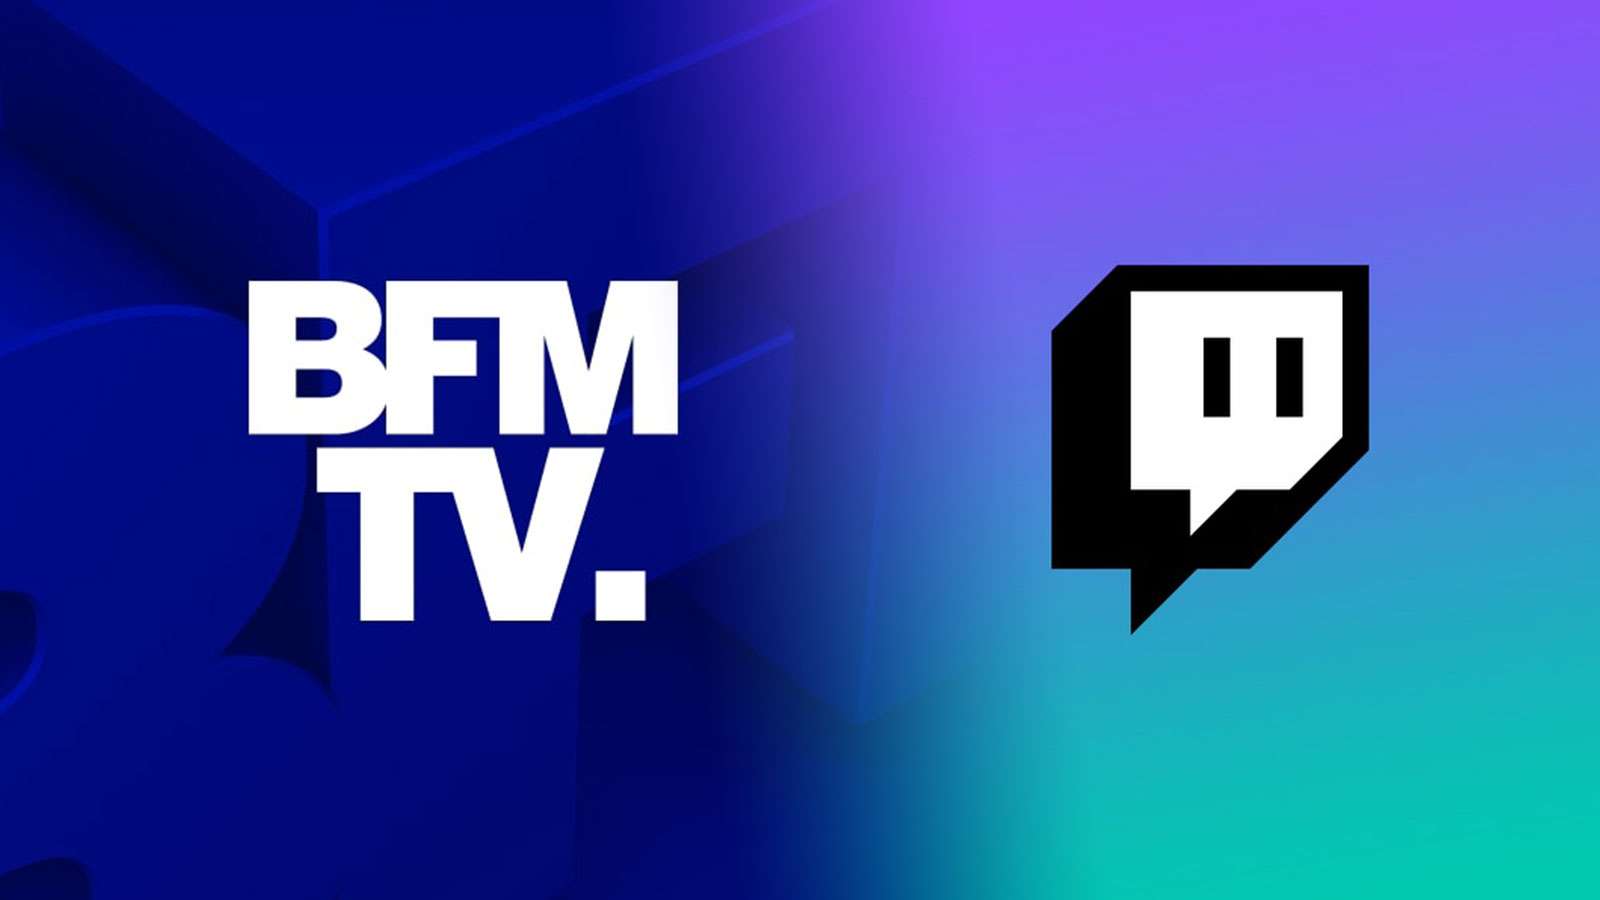 À son tour, BFM TV s'apprête à faire ses débuts sur Twitch